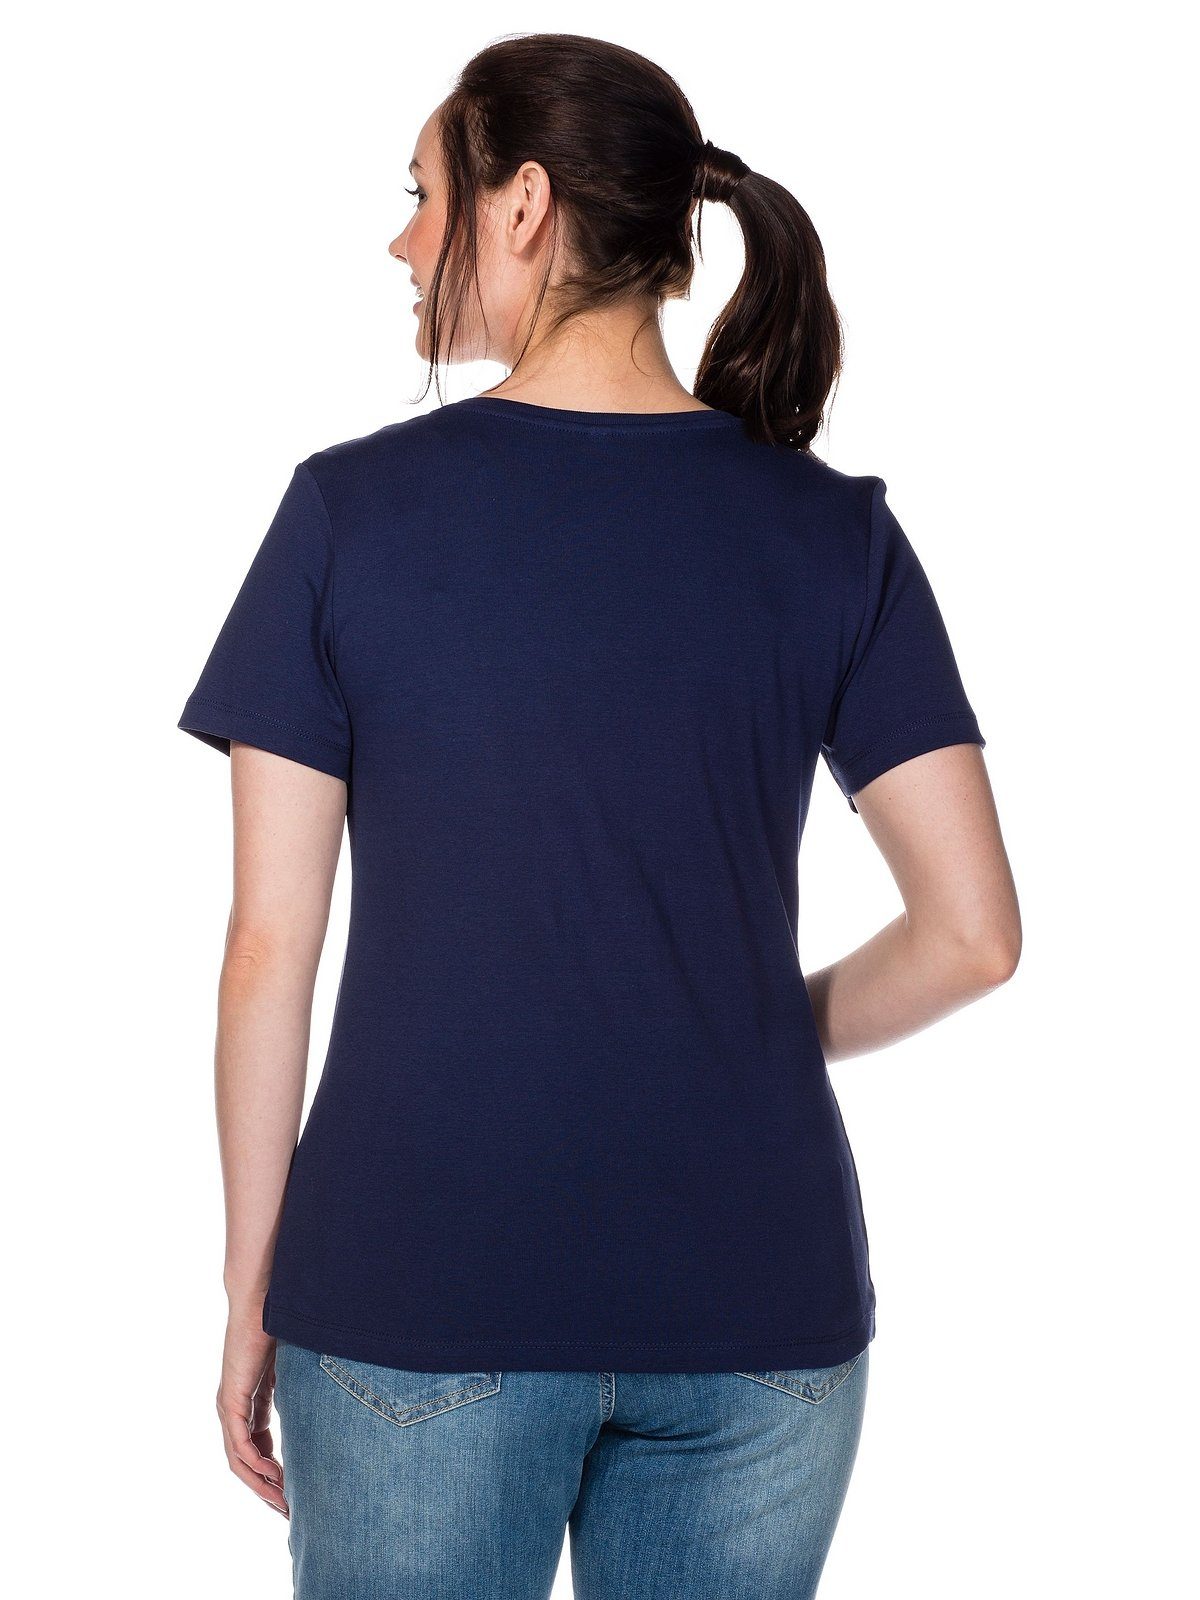 Qualität Große Größen aus Sheego marine fein gerippter T-Shirt